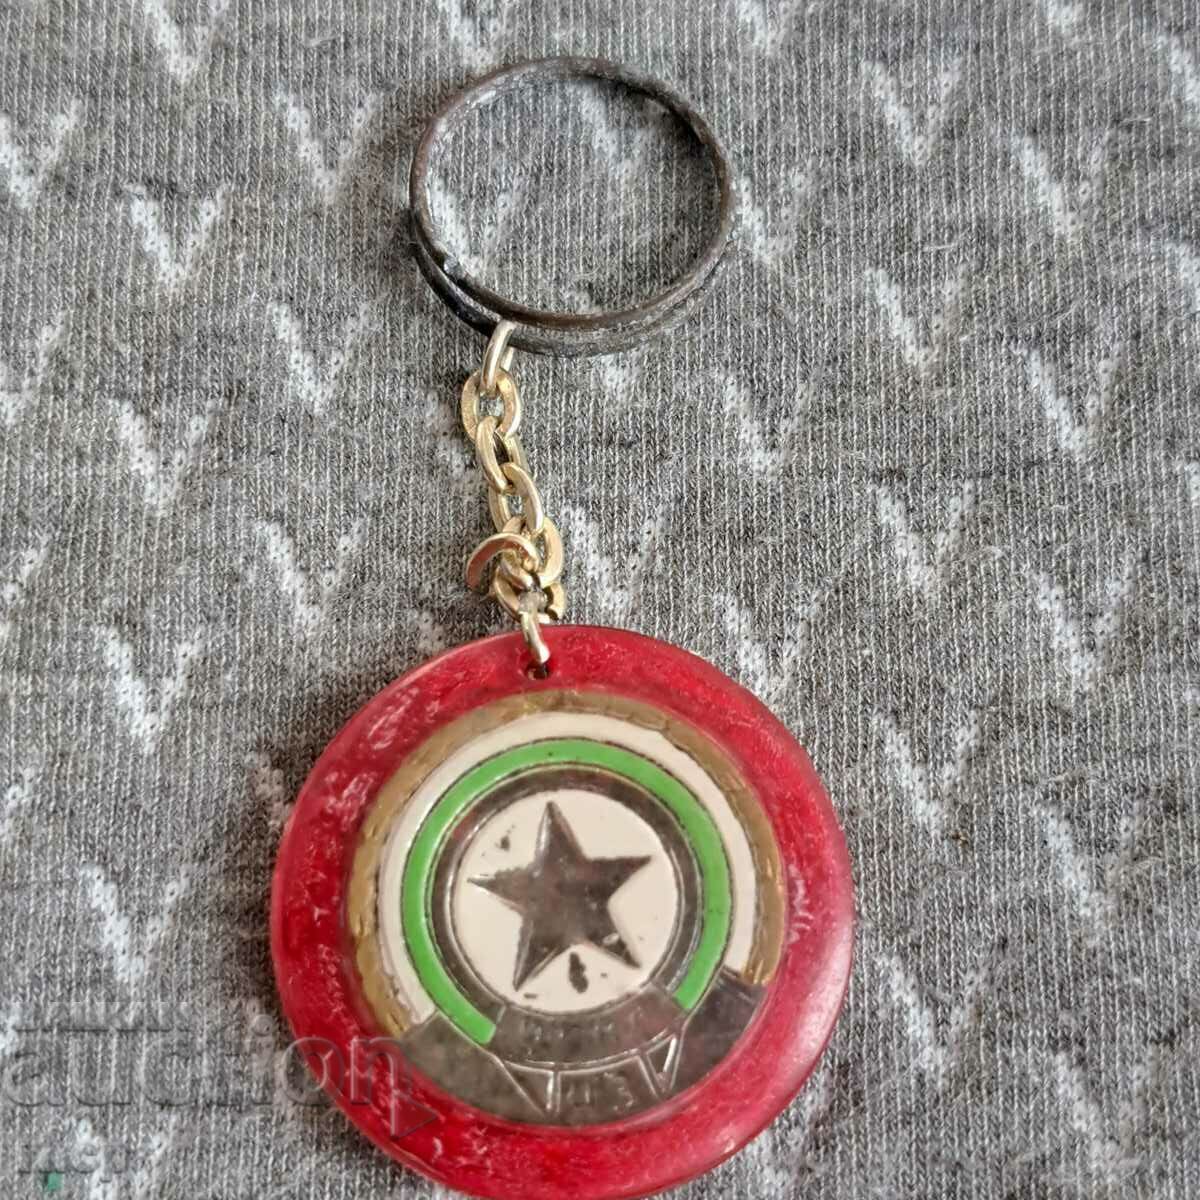 CSKA HZ old key ring emblem